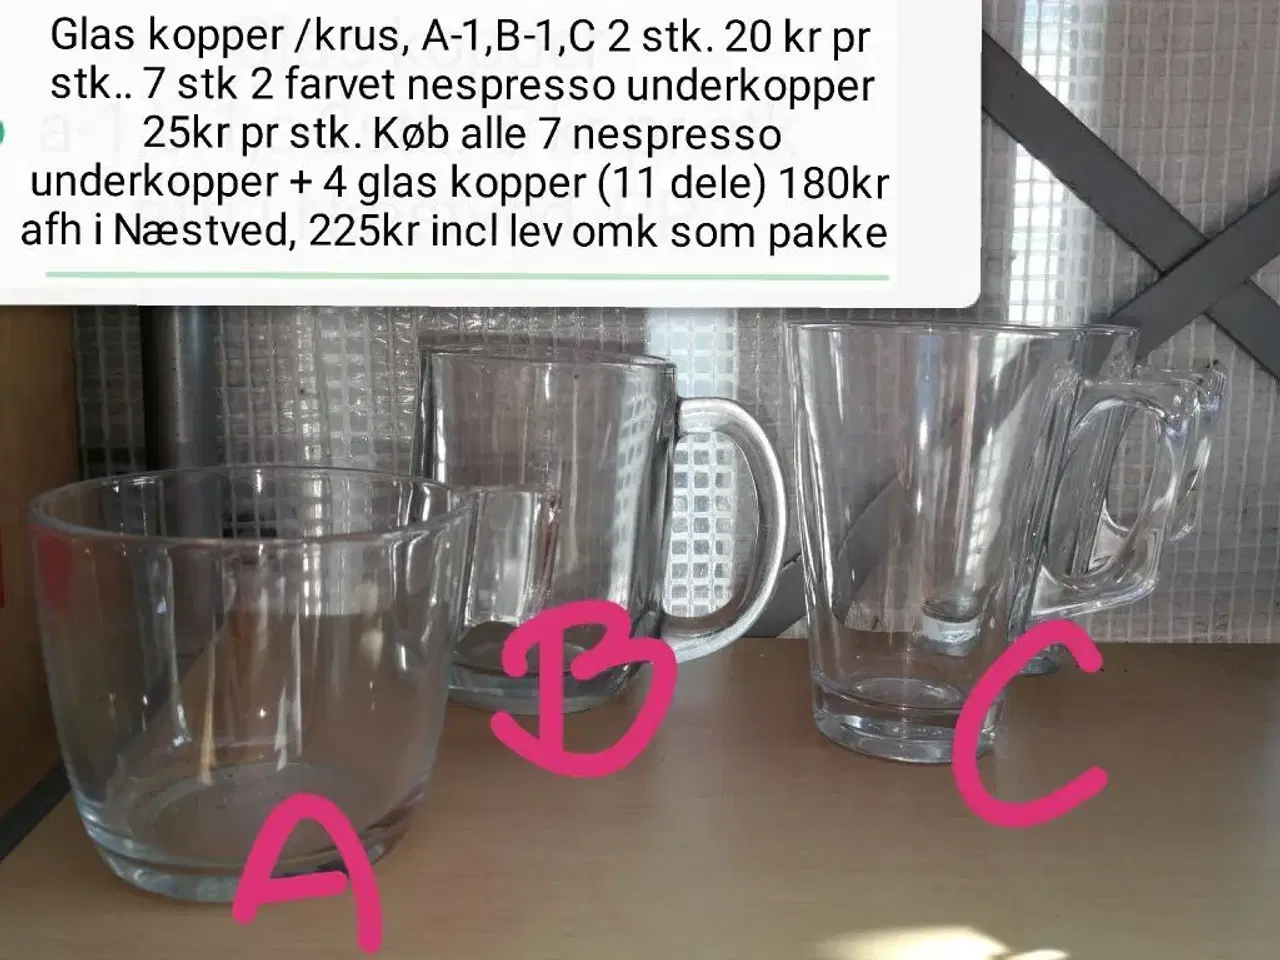 Billede 2 - Nespresso underkopper og glas kopper